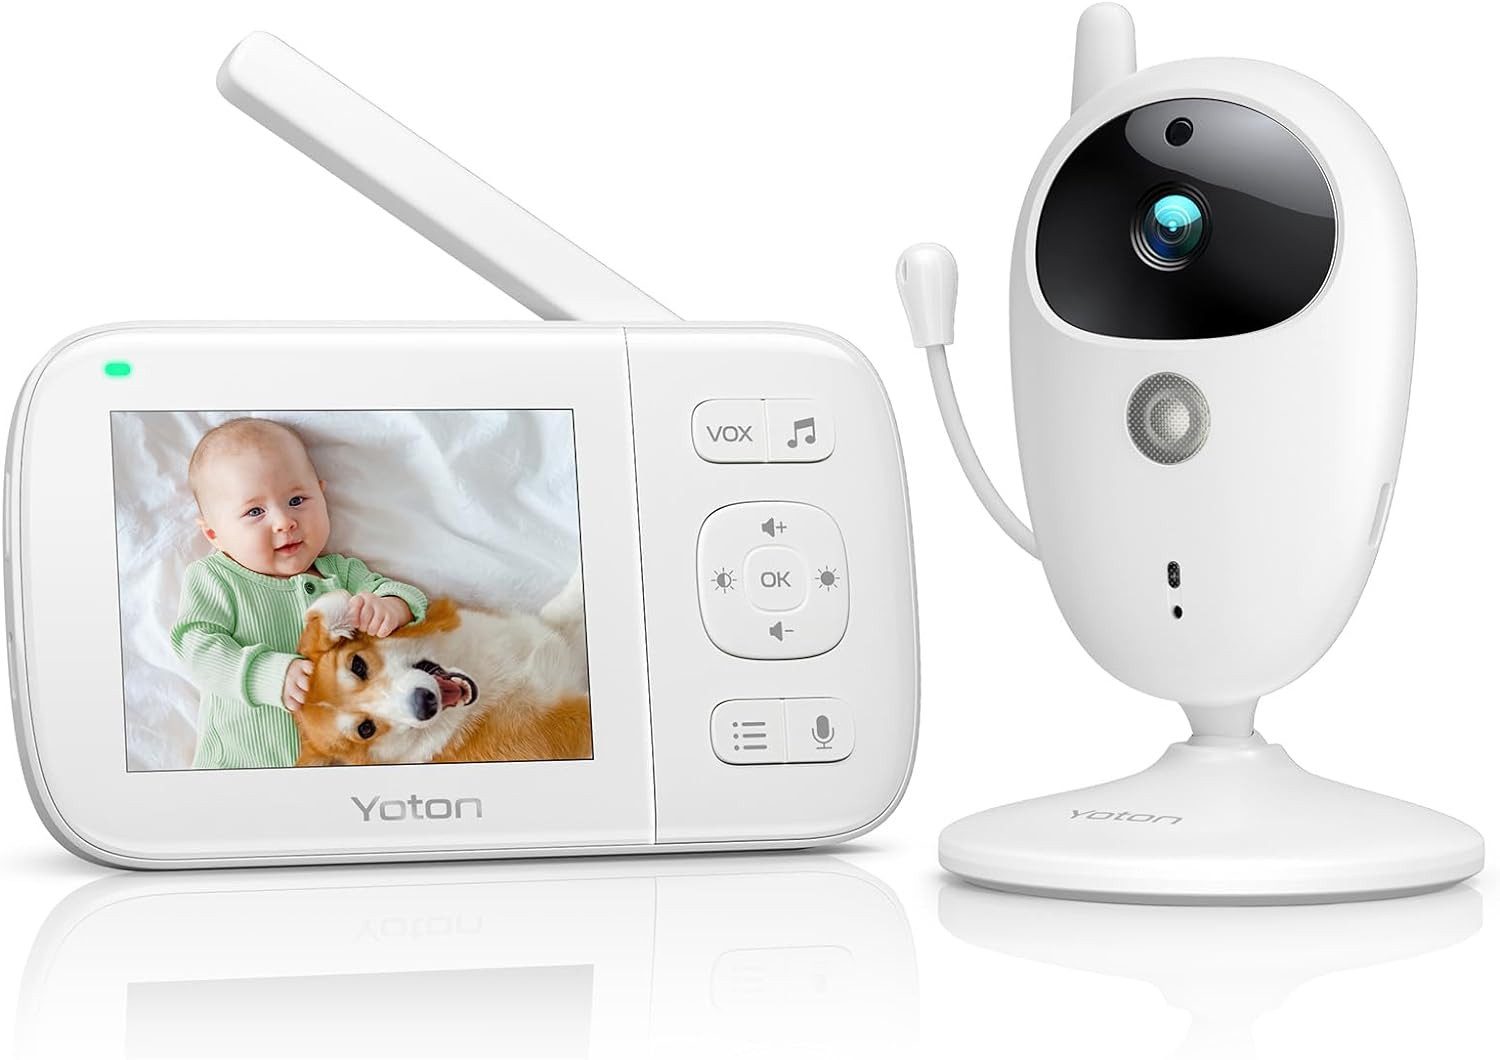 Yoton Video-Babyphone Babyphone mit Kamera, 2.4"LCD, Nachtsicht, Temperaturanzeige, Schlaflieder, VOX